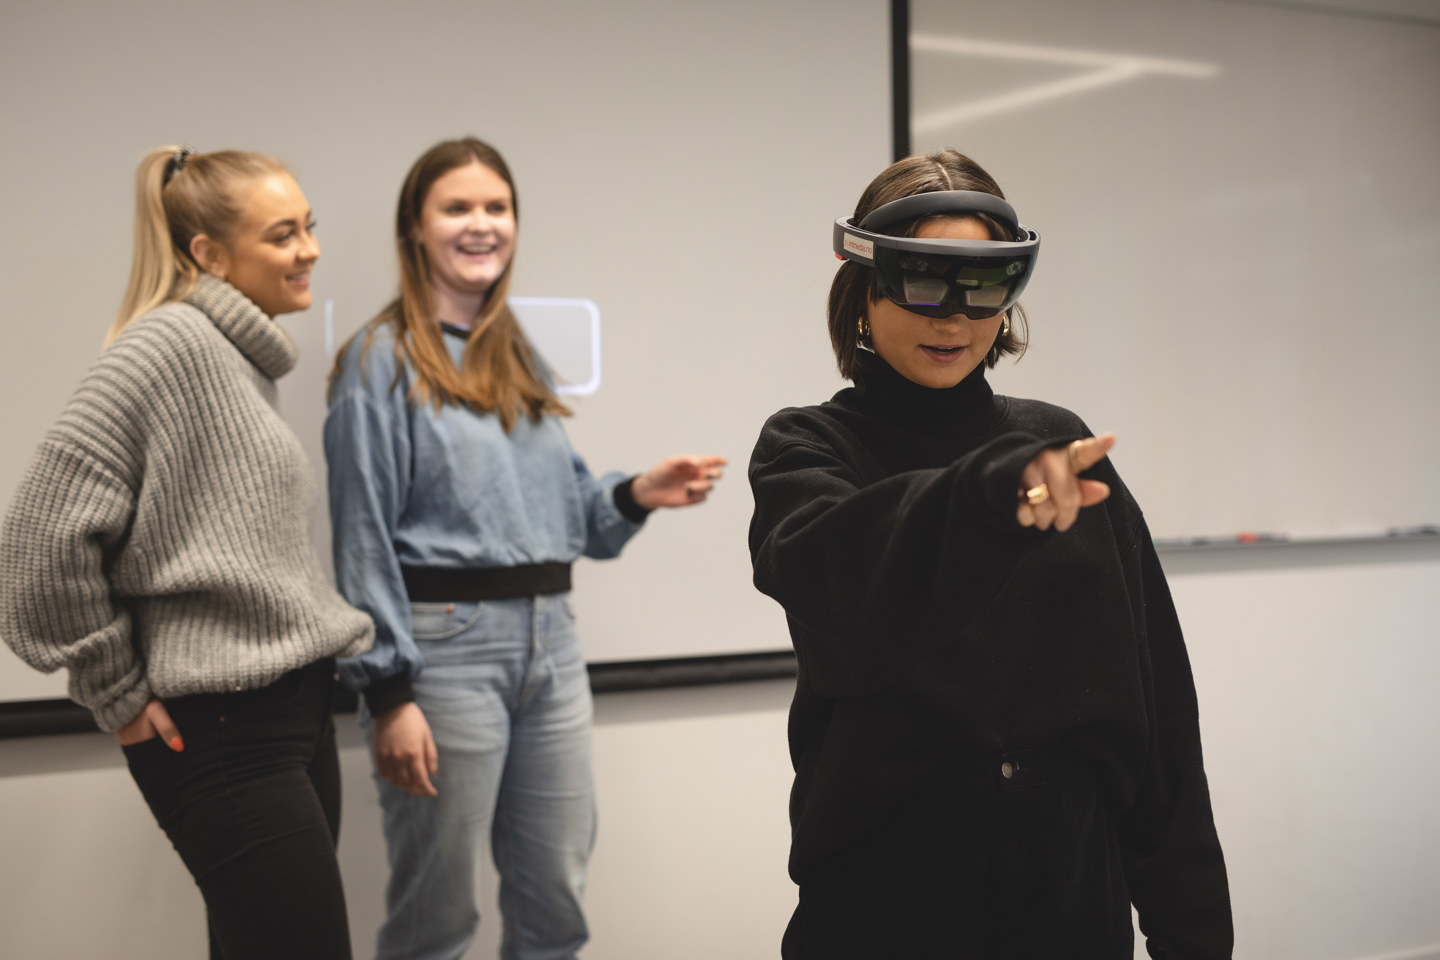 En jente i front bruker VR-briller, to venninner smiler og følger med i bakgrunnen